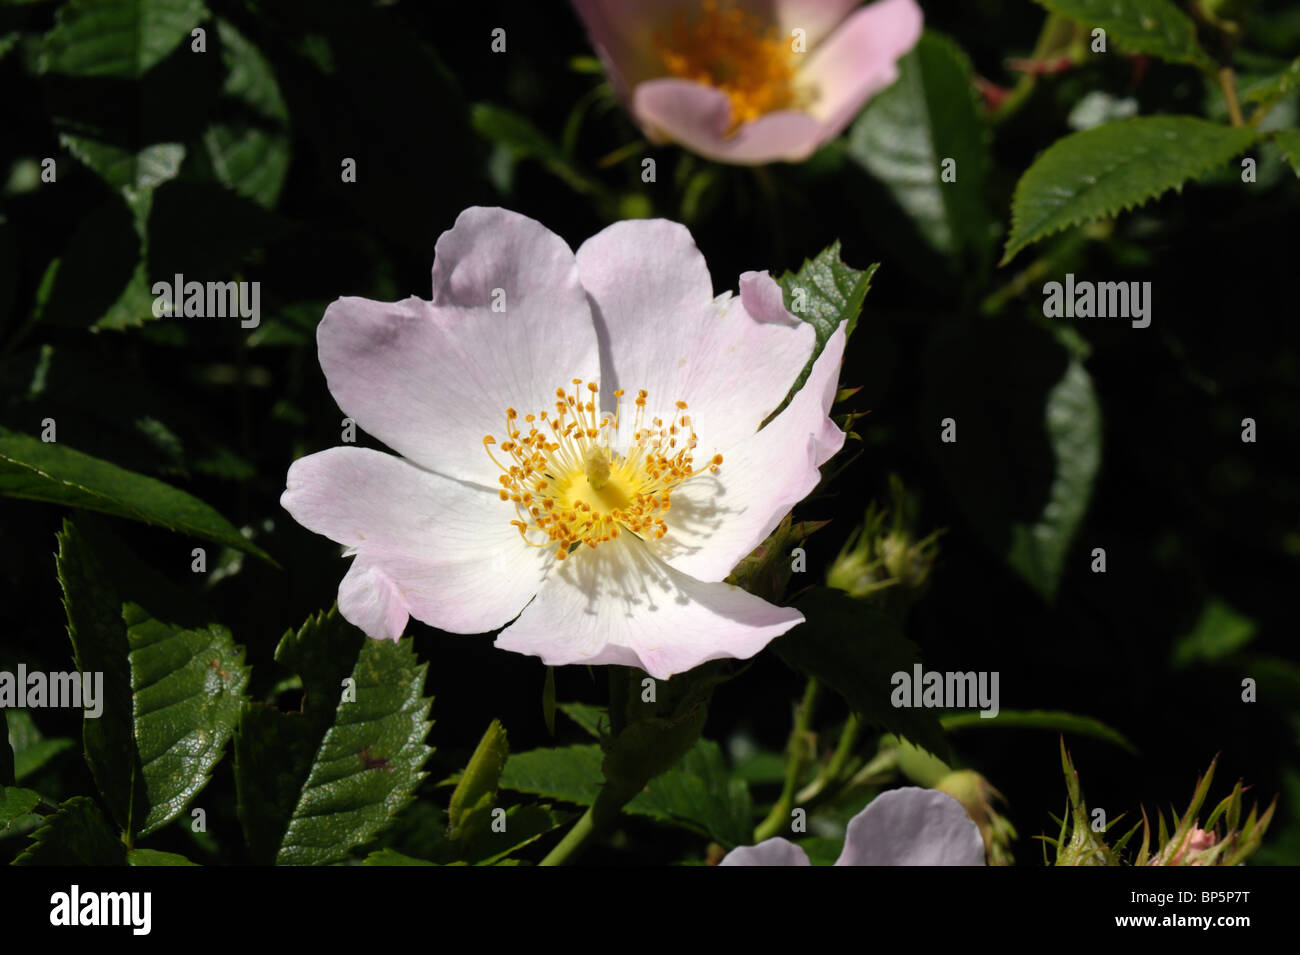 Dog rose (Rosa canina) flowers Stock Photo